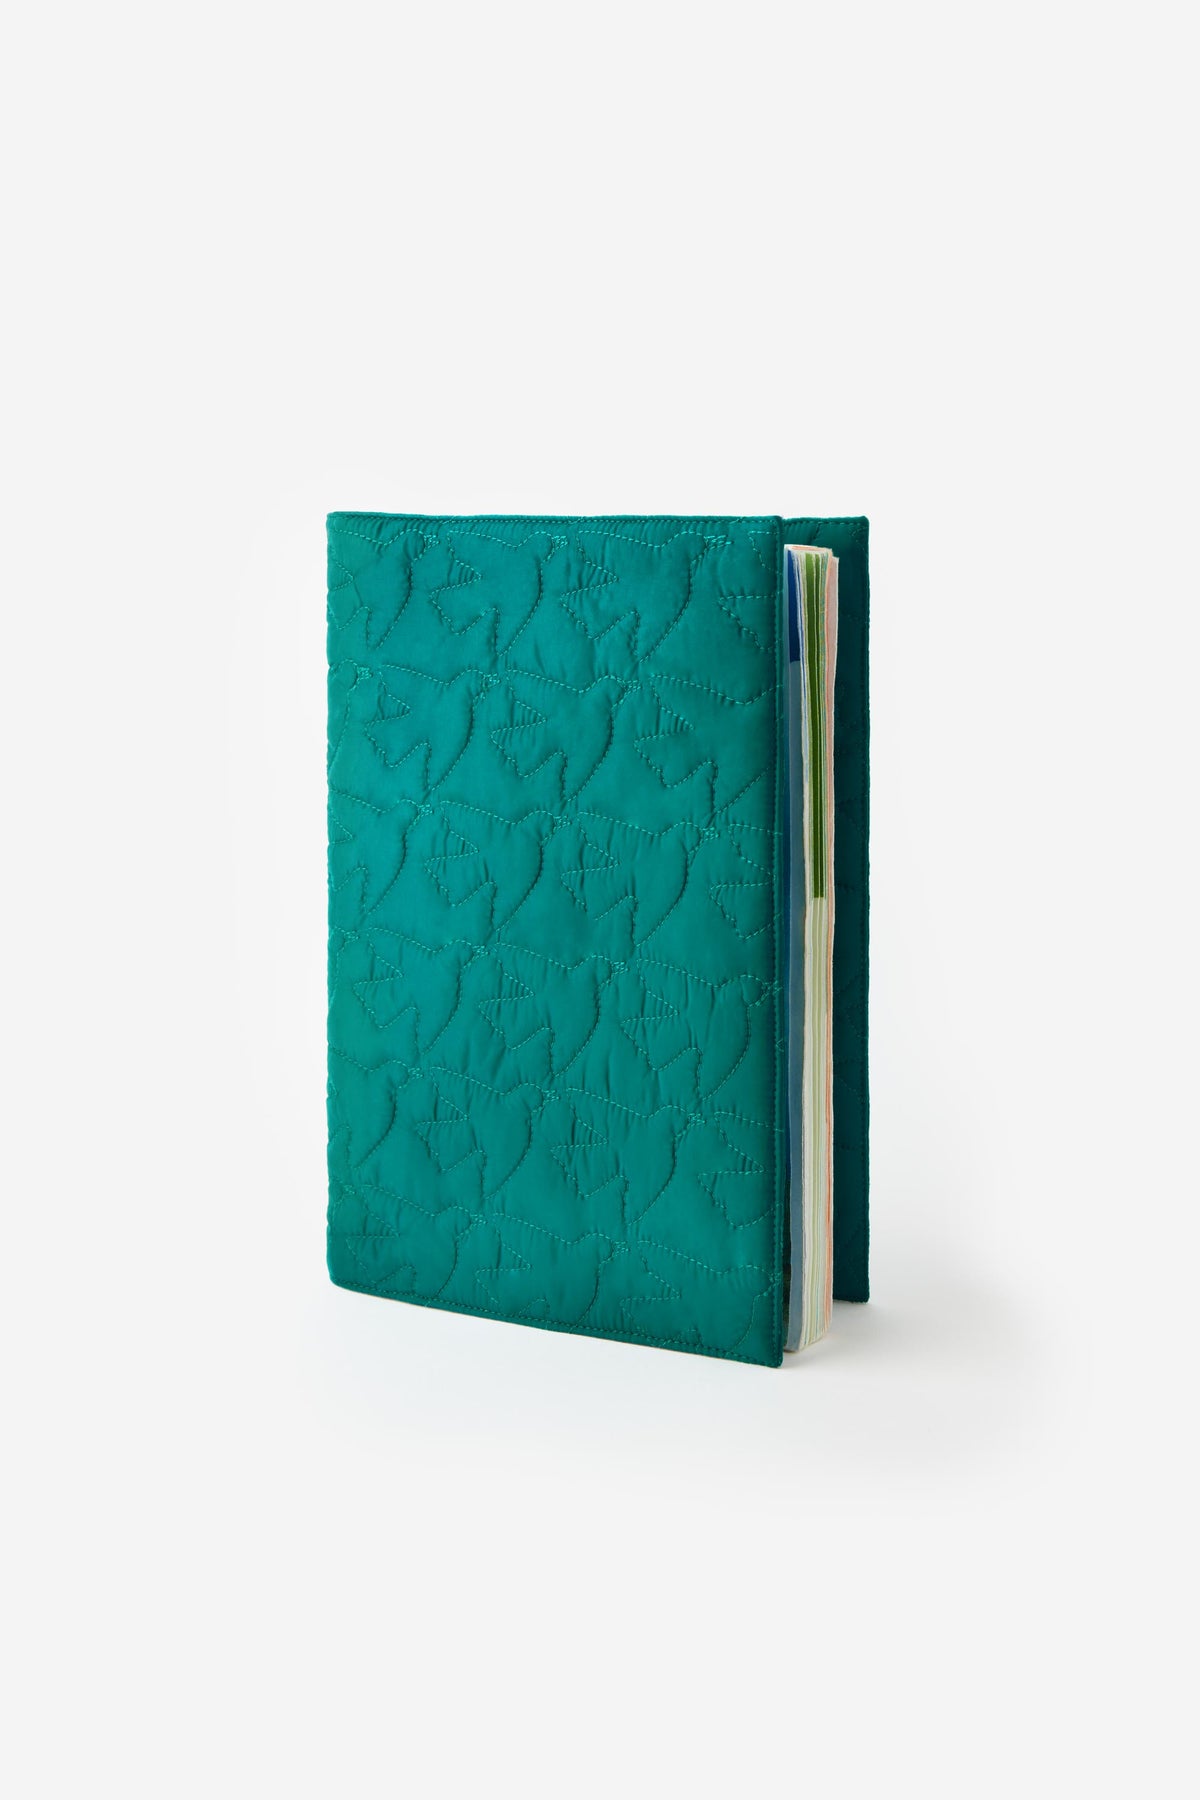 Protège cahier adapté au format carnet de santé. En nylon vert, matelassé motif oiseaux. 26 paradis.